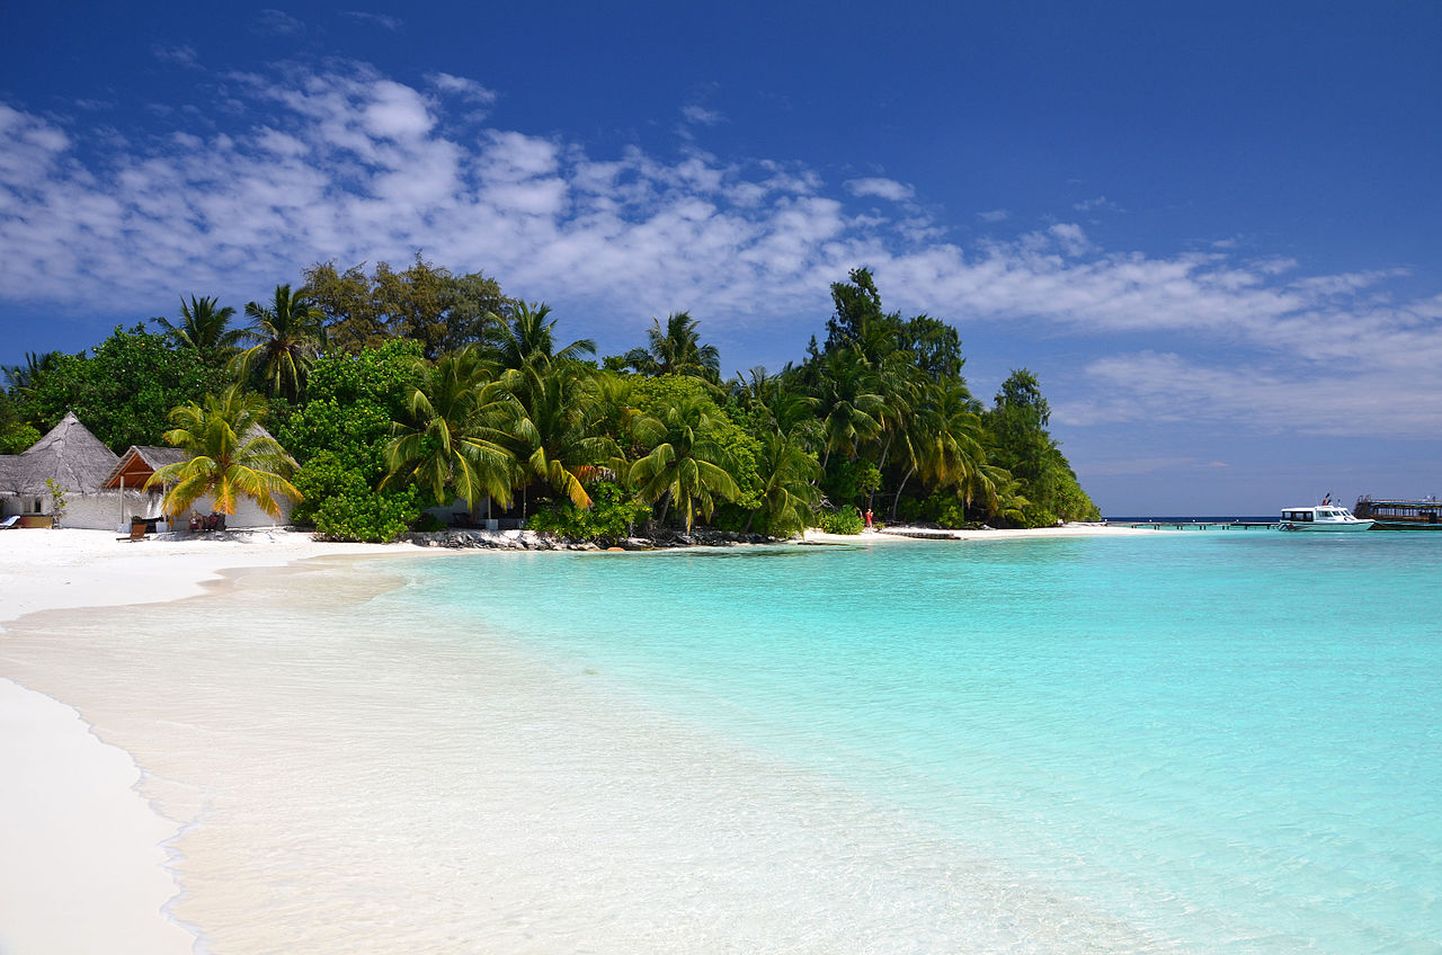 Bathalaa kuurortsaar Ari atollil on vaid 150 meetri pikkune ning mahutab kahte resorti.